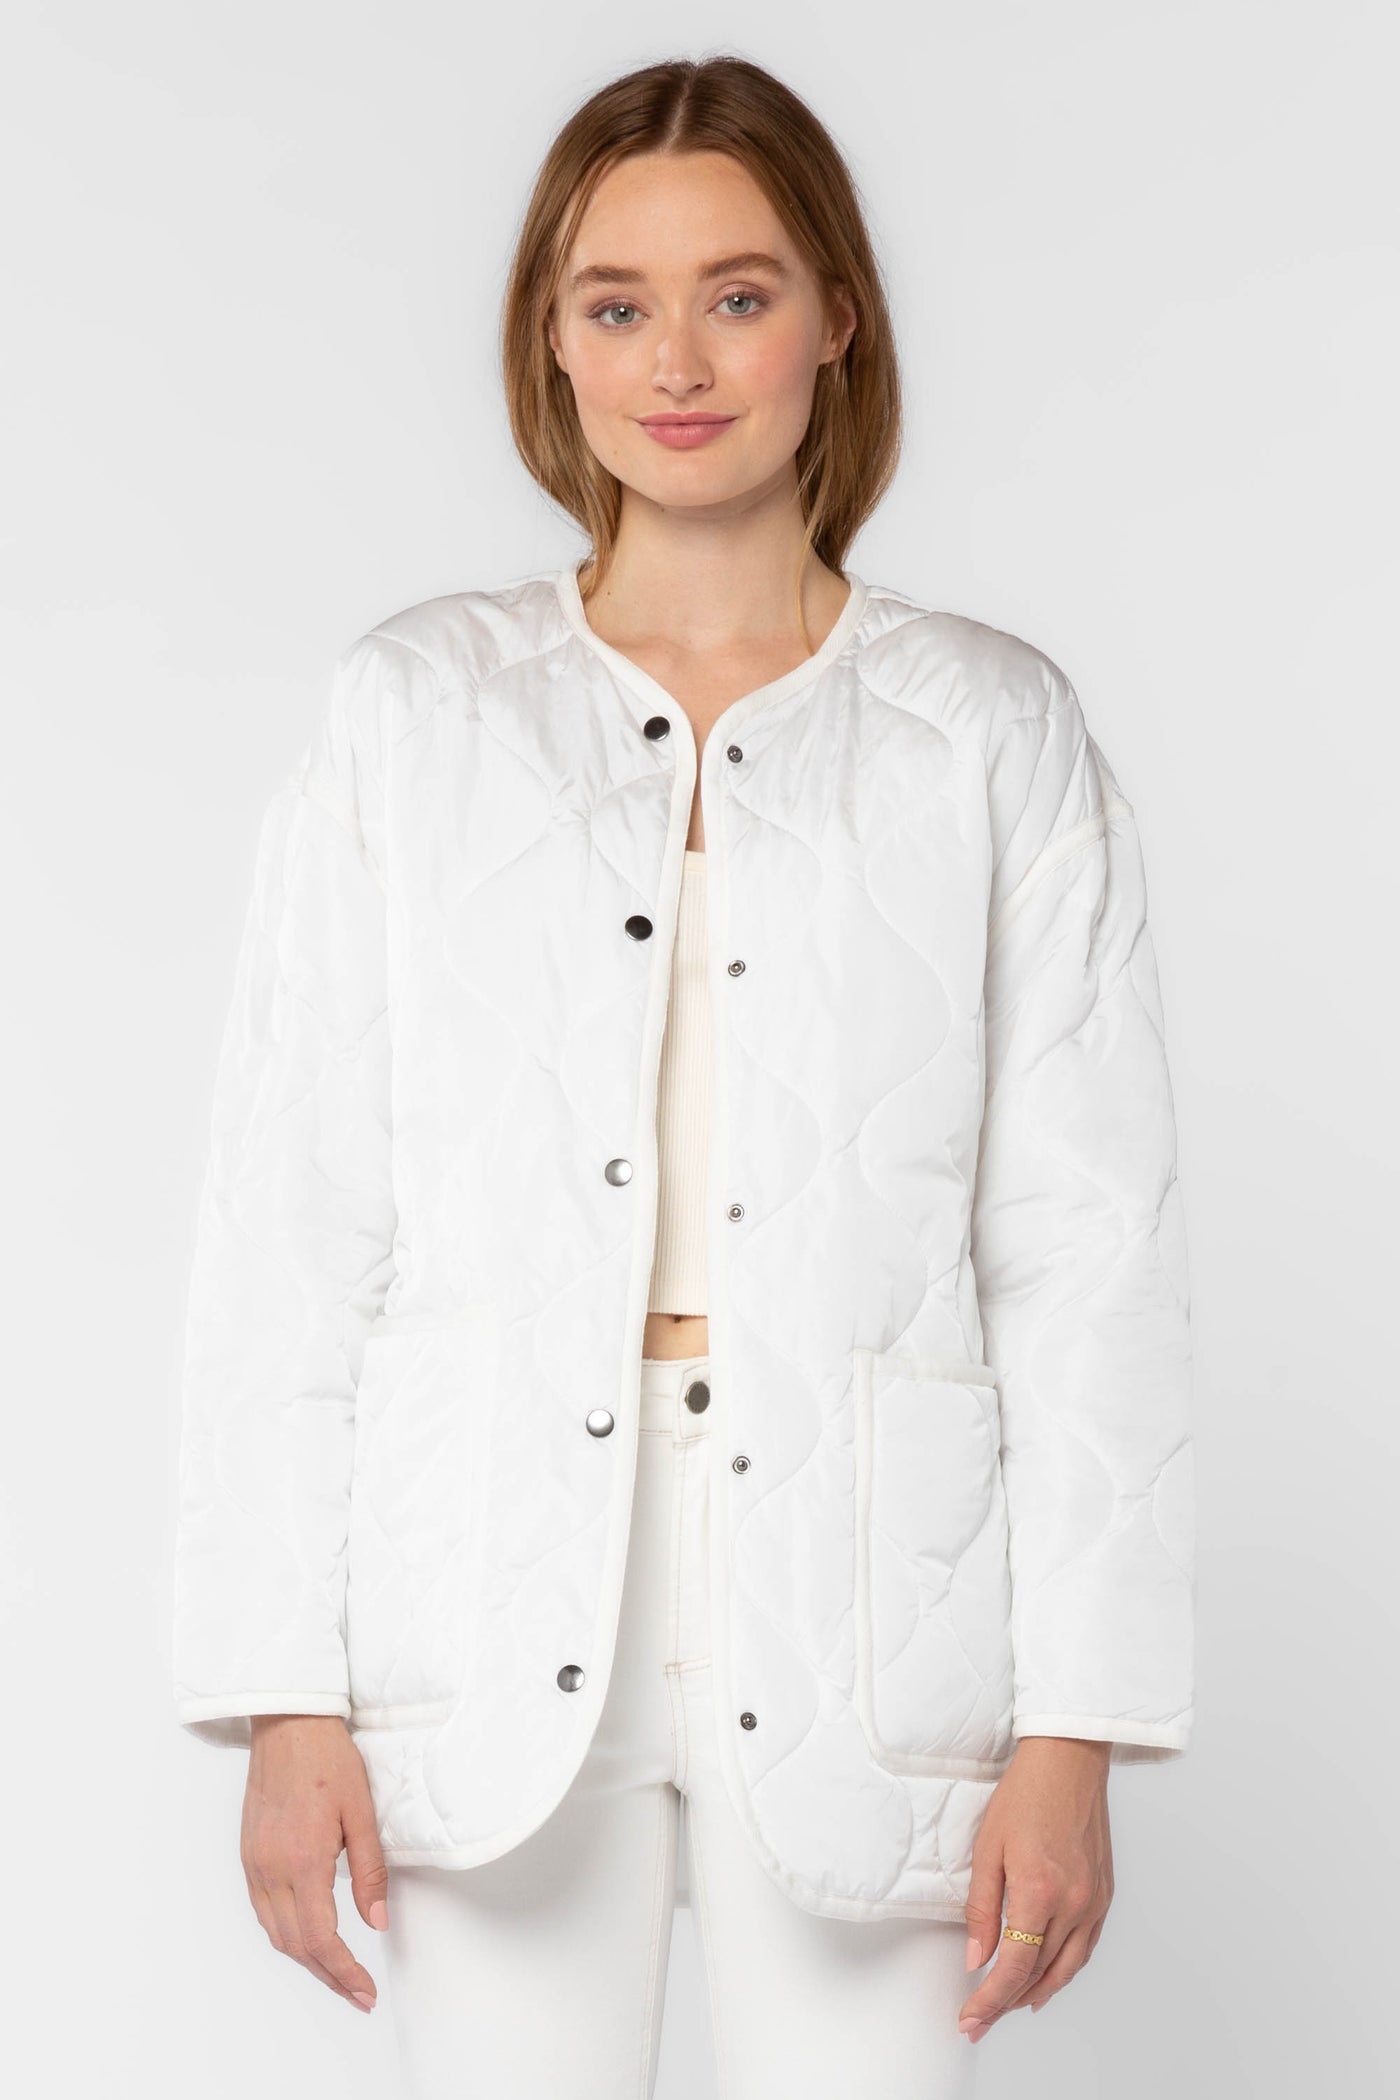 Tacoma White Jacket - Jackets & Outerwear - Velvet Heart Clothing